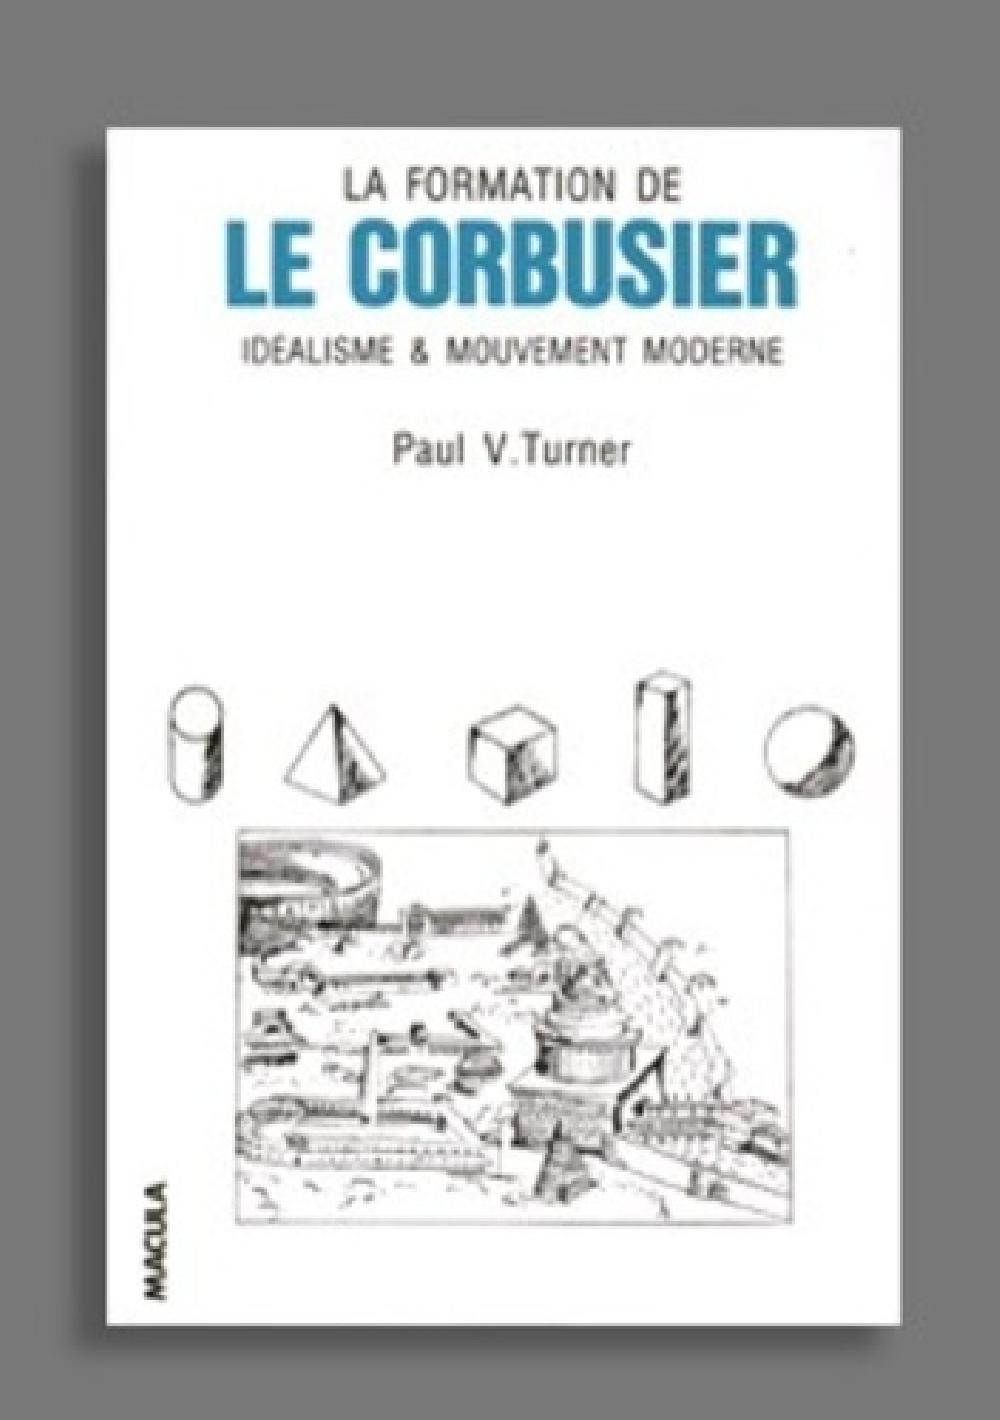 La formation de Le Corbusier